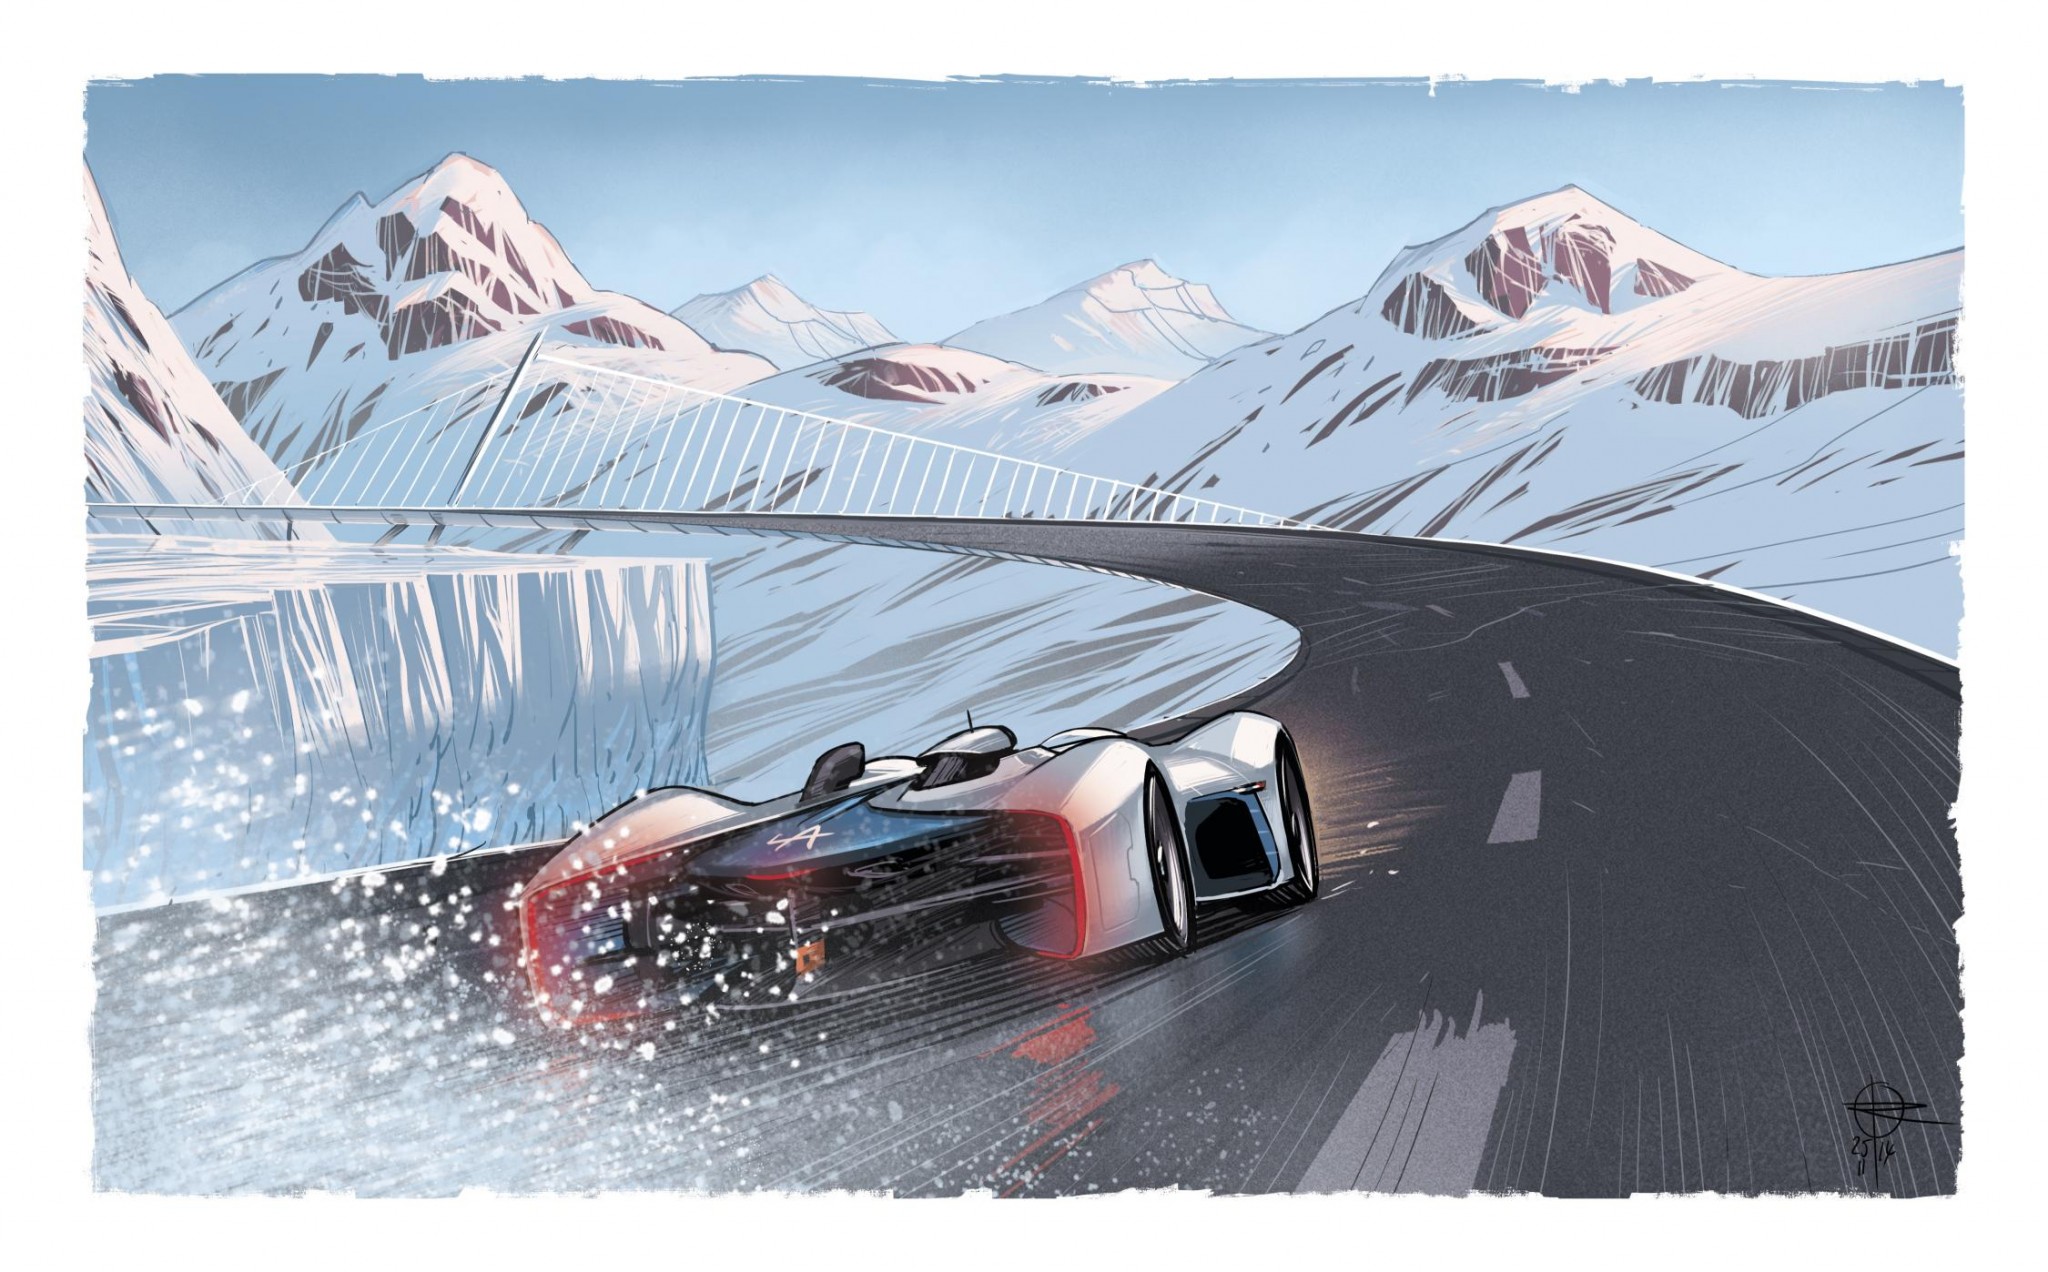 Alpine Vision Gran Turismo revealed